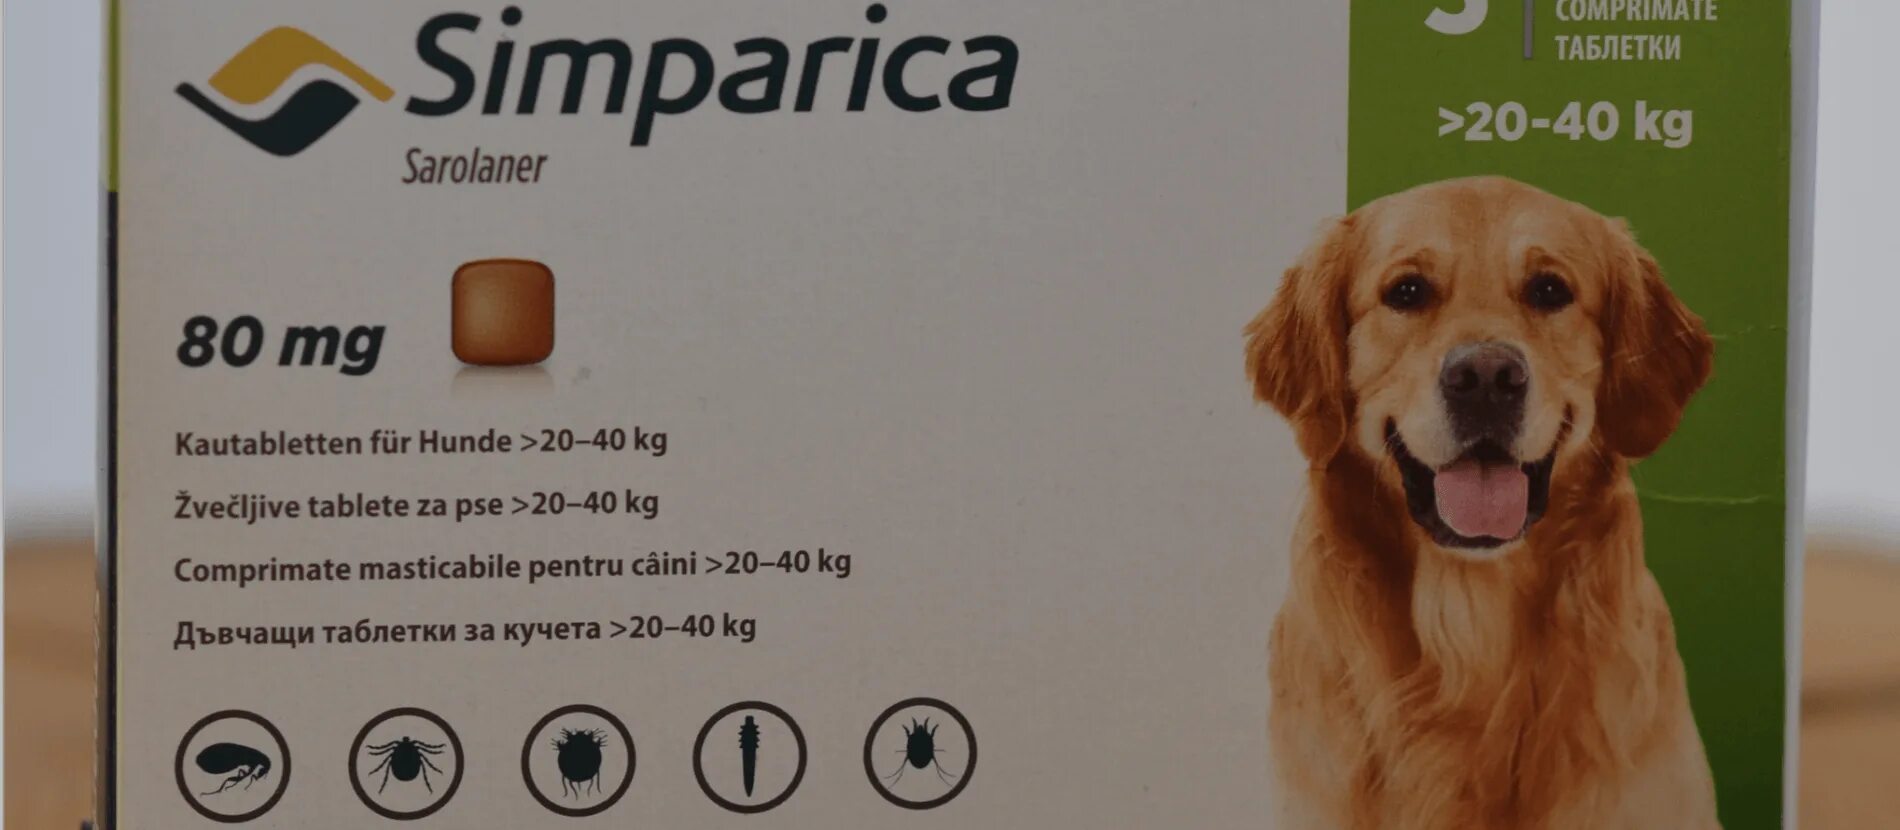 Симпарика таблетка для собак купить в екатеринбурге. Симпарика таблетка для собак 20-40 кг. Бравекто 20-40 кг таблетки Симпарика 20-40 кг. Симпарика для собак весом 20-40 кг. Симпарика до 20 кг для собак.